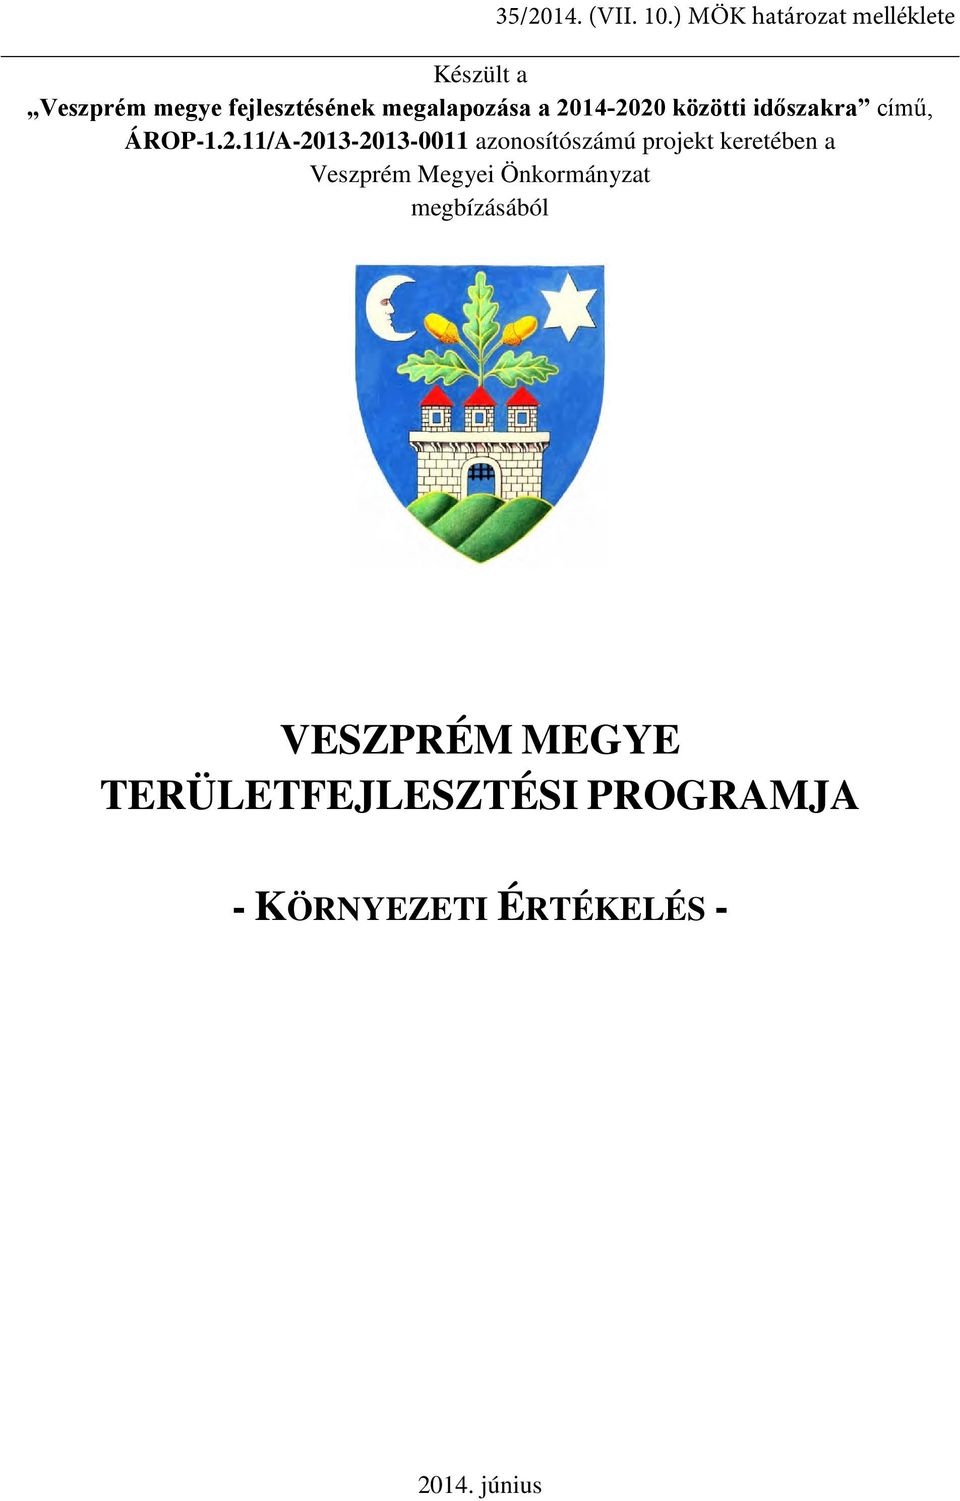 11/A-2013-2013-0011 azonosítószámú projekt keretében a Veszprém